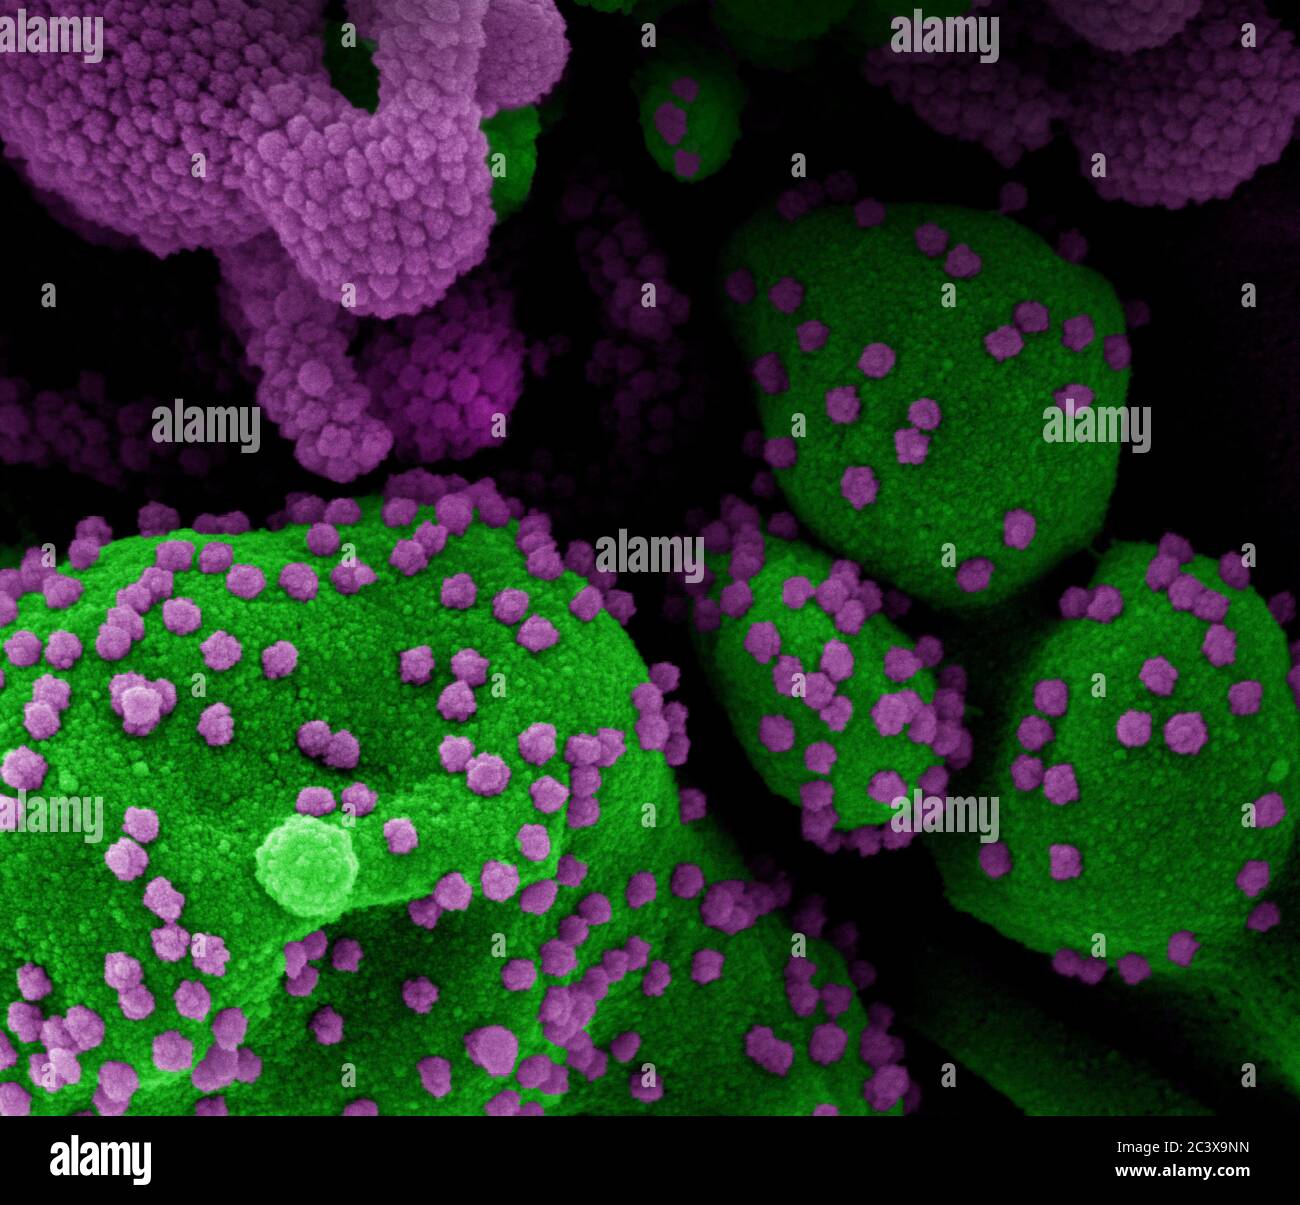 Nuevo Coronavirus SARS-CoV-2 Micrografía electrónica de exploración coloreada de una célula apoptótica (verde) muy infectada con partículas del virus SARS-COV-2 (púrpura), aislada de una muestra de paciente. Imagen en el Centro de Investigación integrado NIAID (IRF) en Fort Detrick, Maryland. Foto de stock